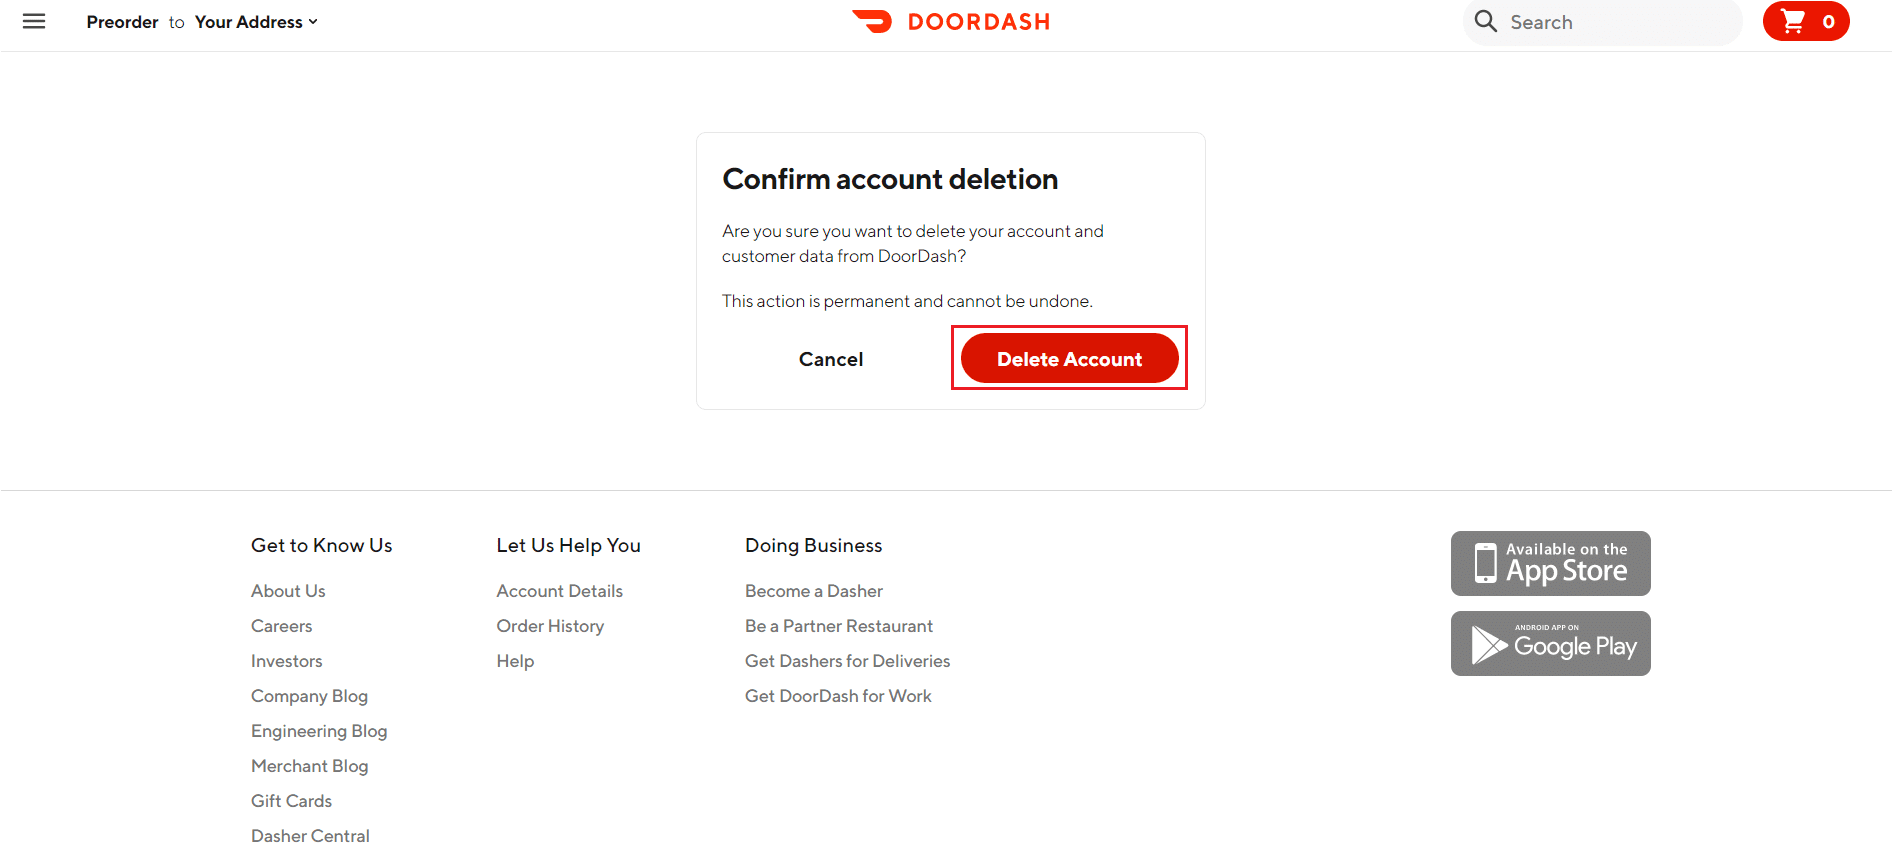 нажмите «Удалить учетную запись», чтобы подтвердить удаление учетной записи на веб-сайте DoorDash.